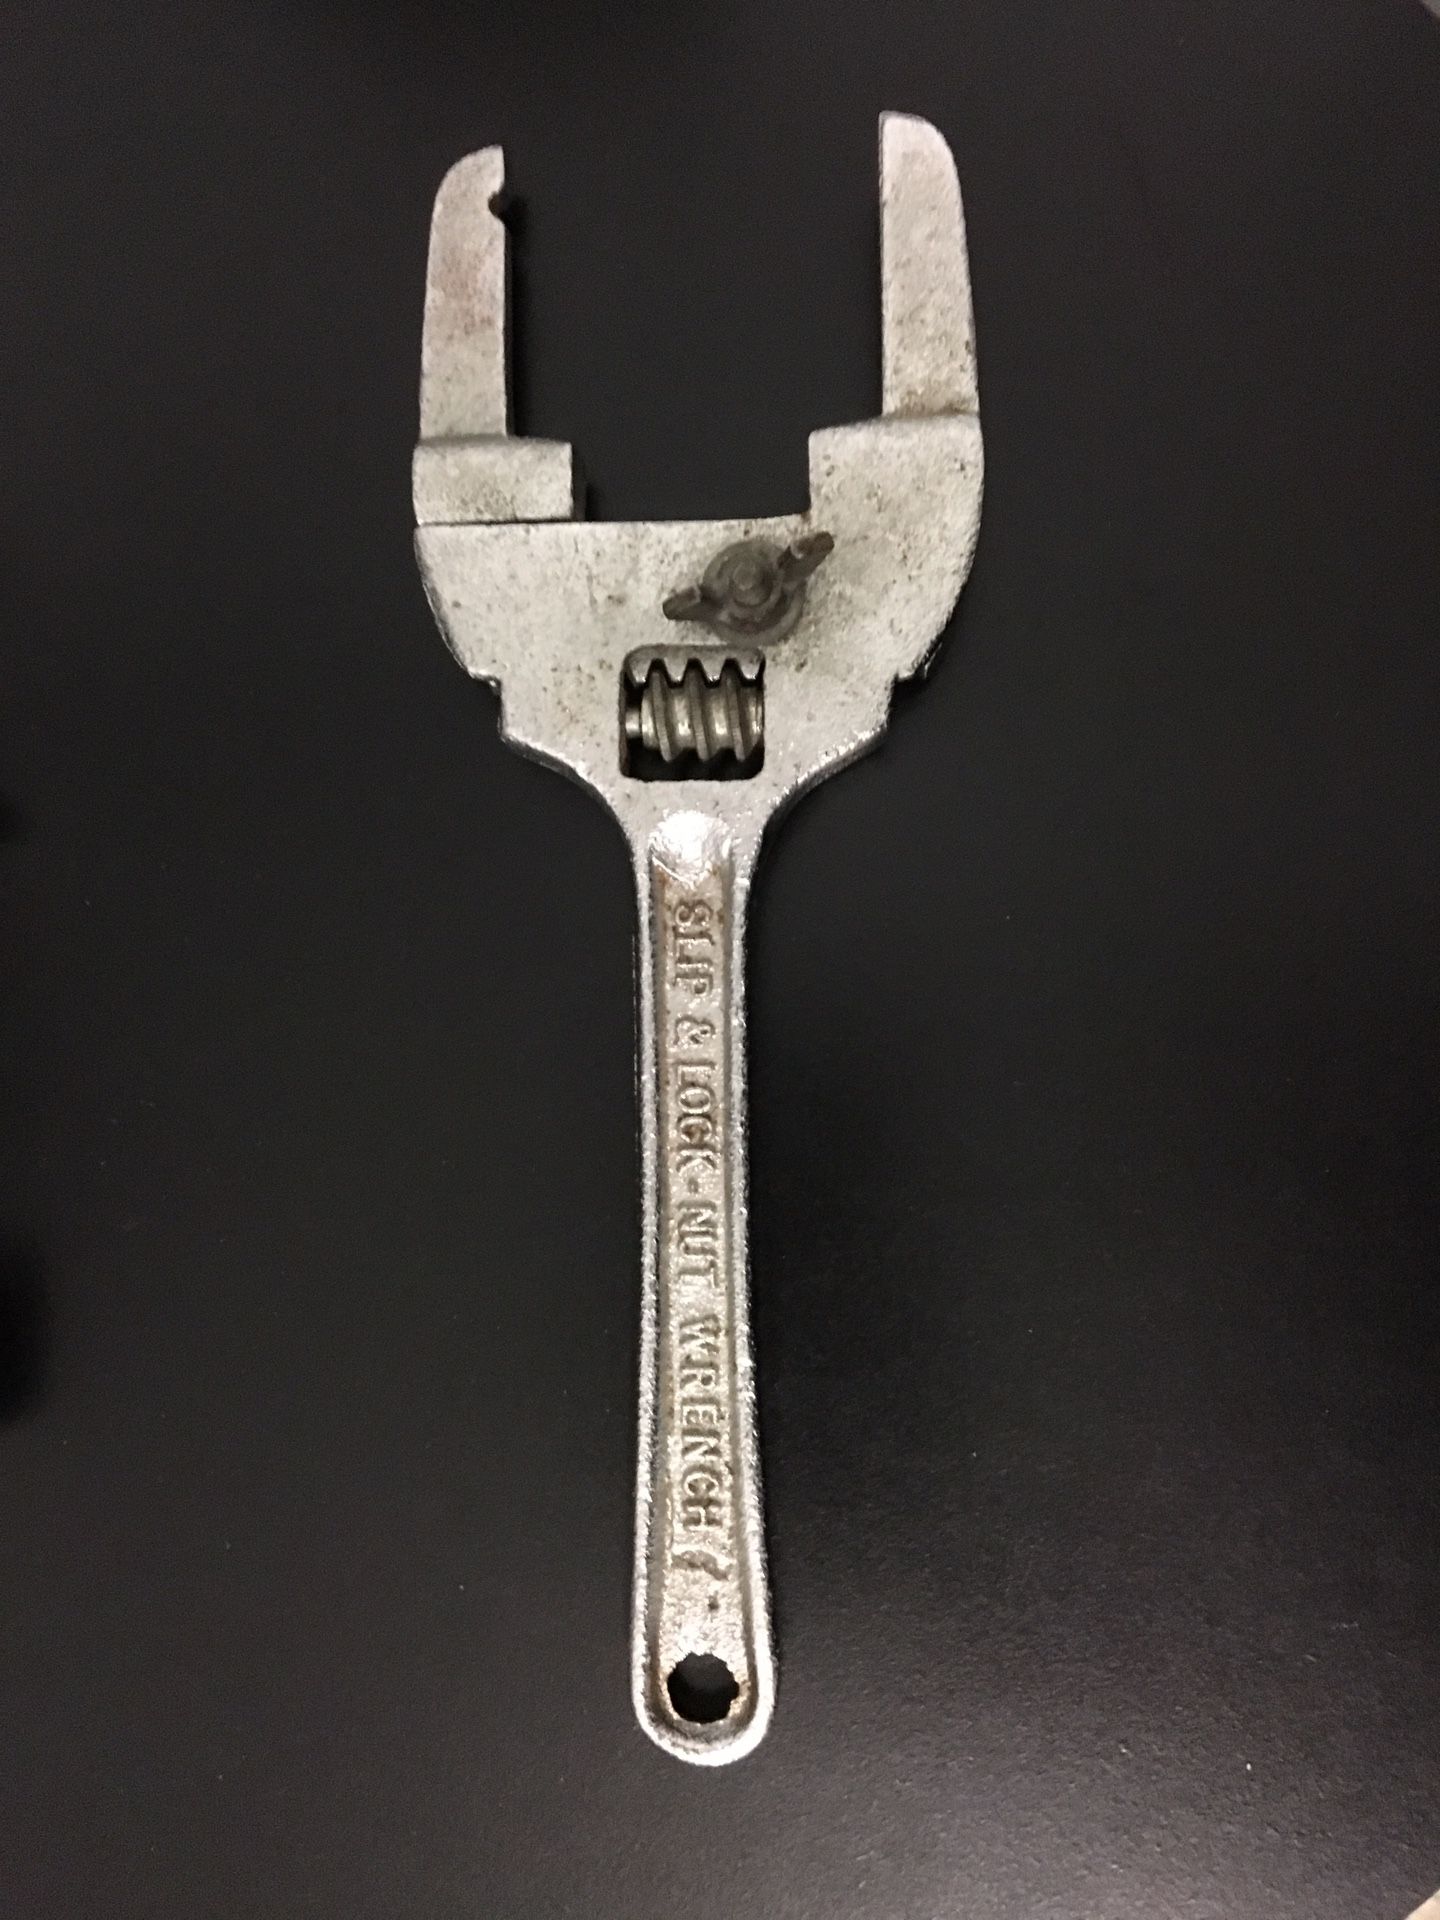 Slip & lock nut wrench Plumber tool